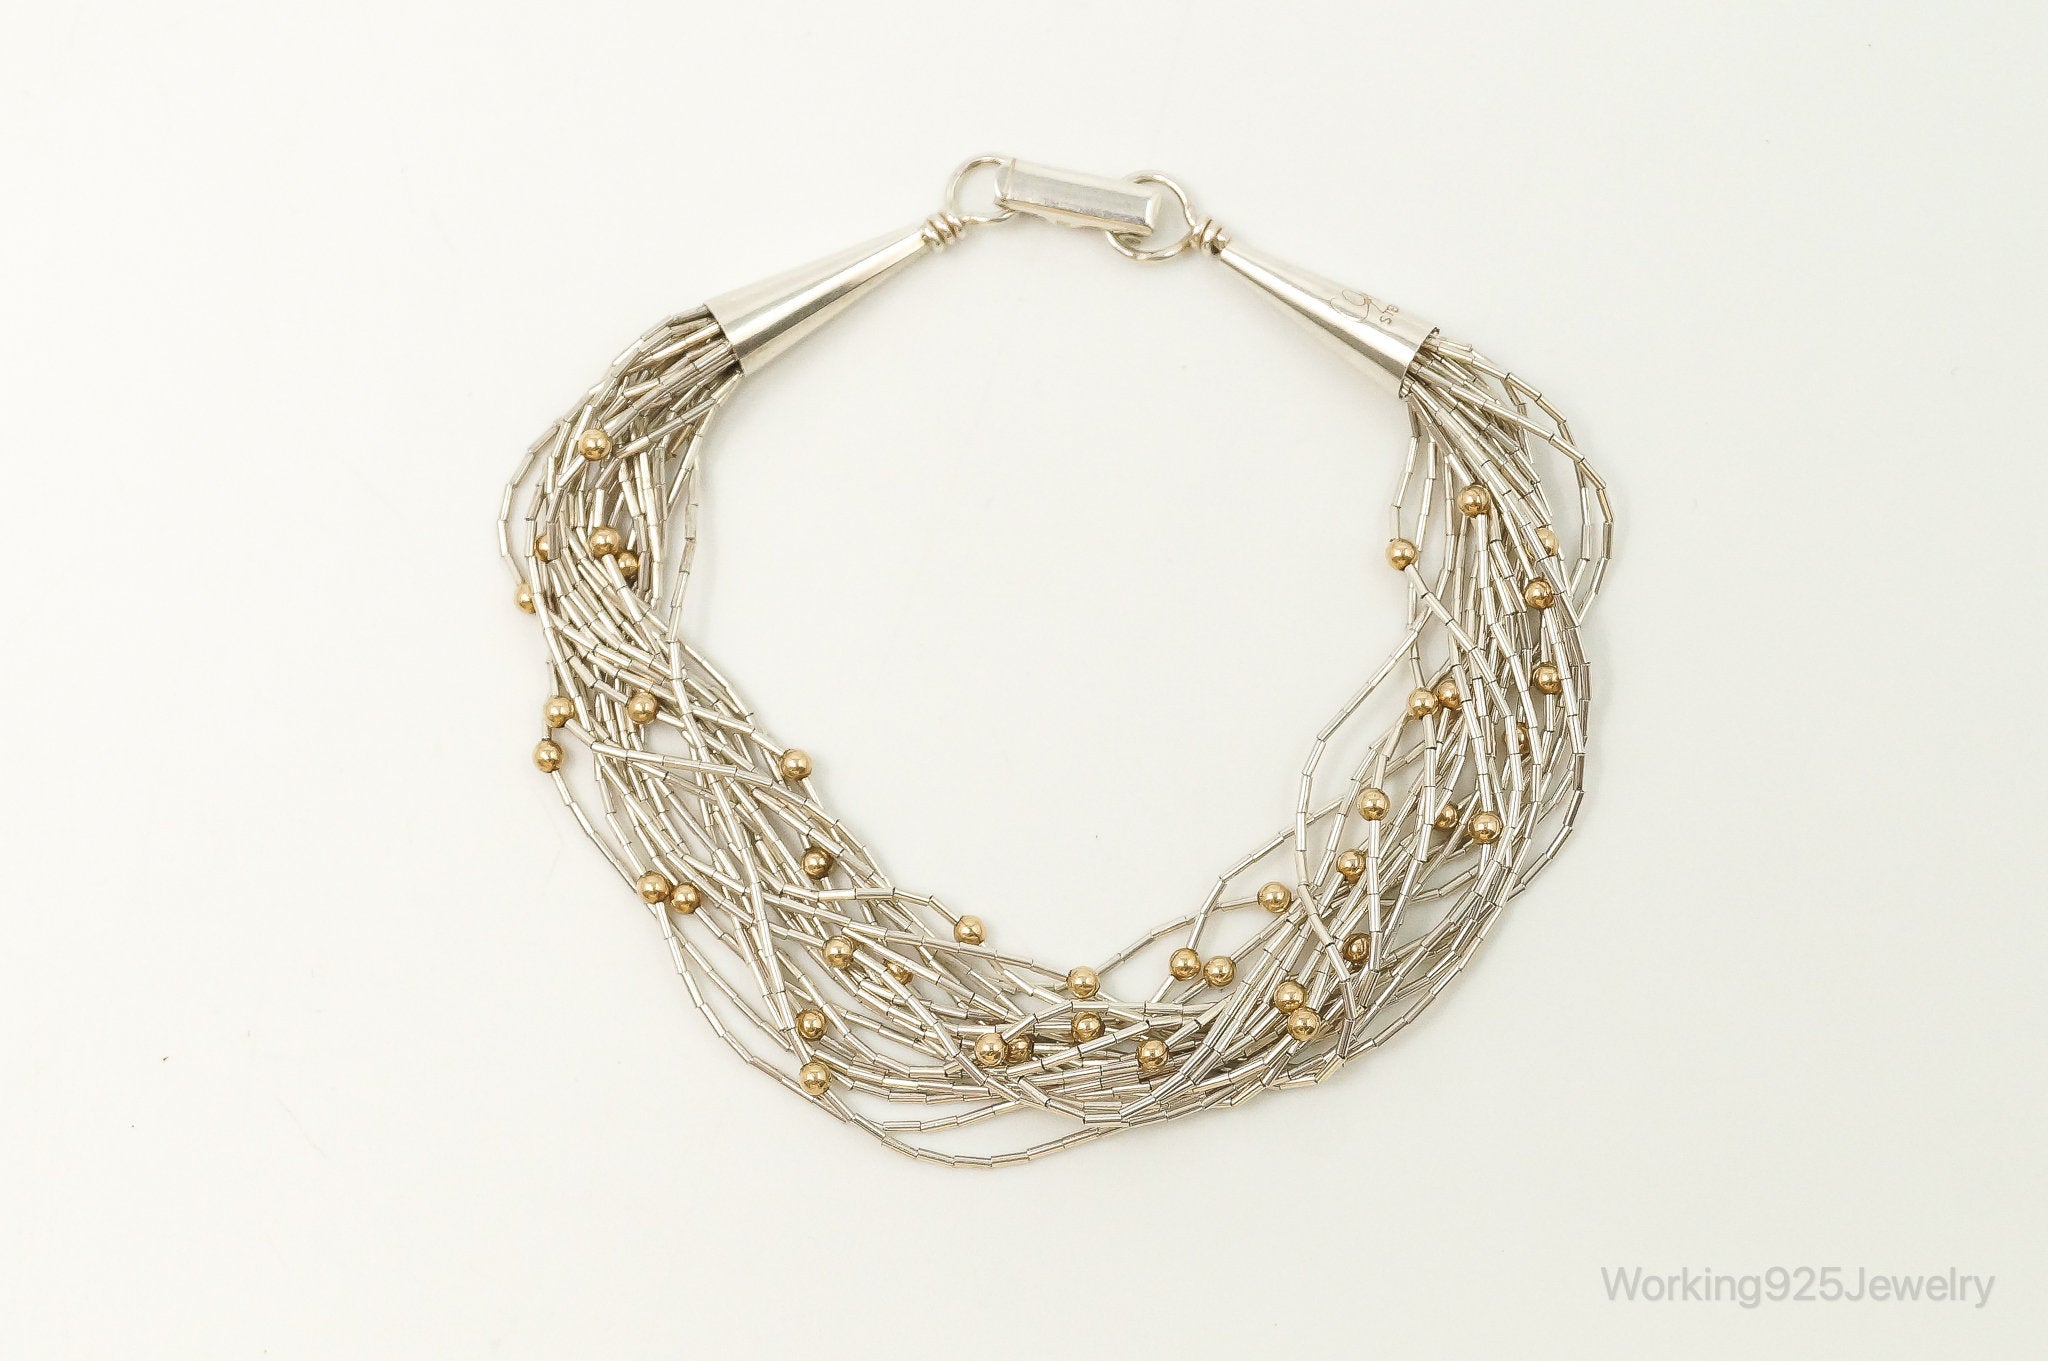 Designer Carolyn Pollack Gold Over Sterling Beads Sterling Silver Bracelet